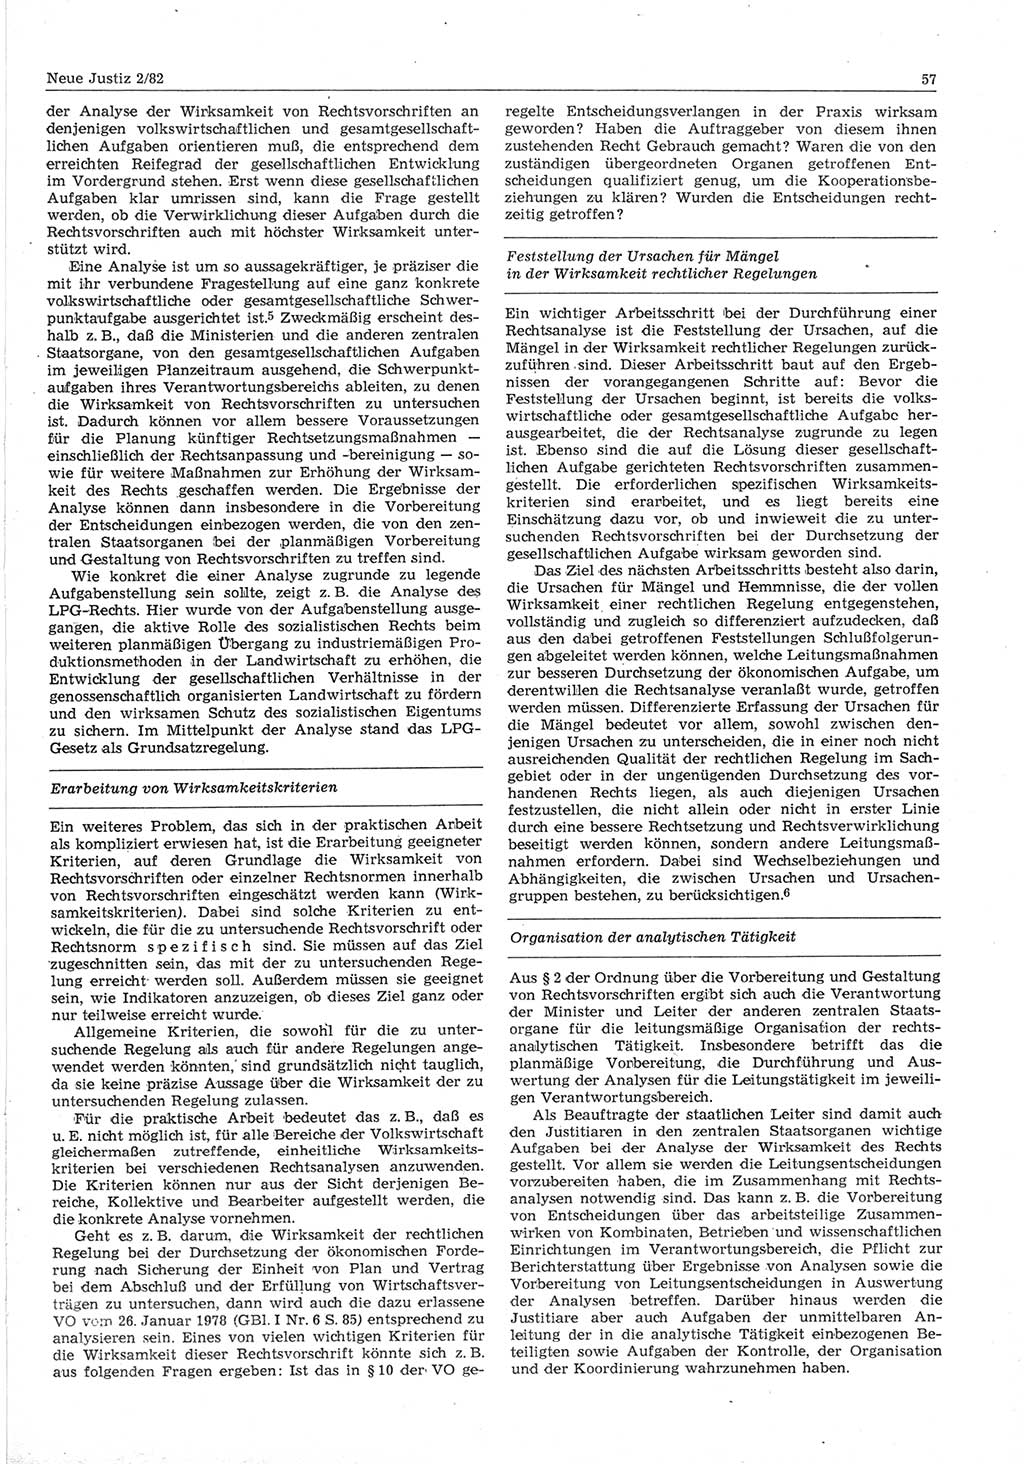 Neue Justiz (NJ), Zeitschrift für sozialistisches Recht und Gesetzlichkeit [Deutsche Demokratische Republik (DDR)], 36. Jahrgang 1982, Seite 57 (NJ DDR 1982, S. 57)